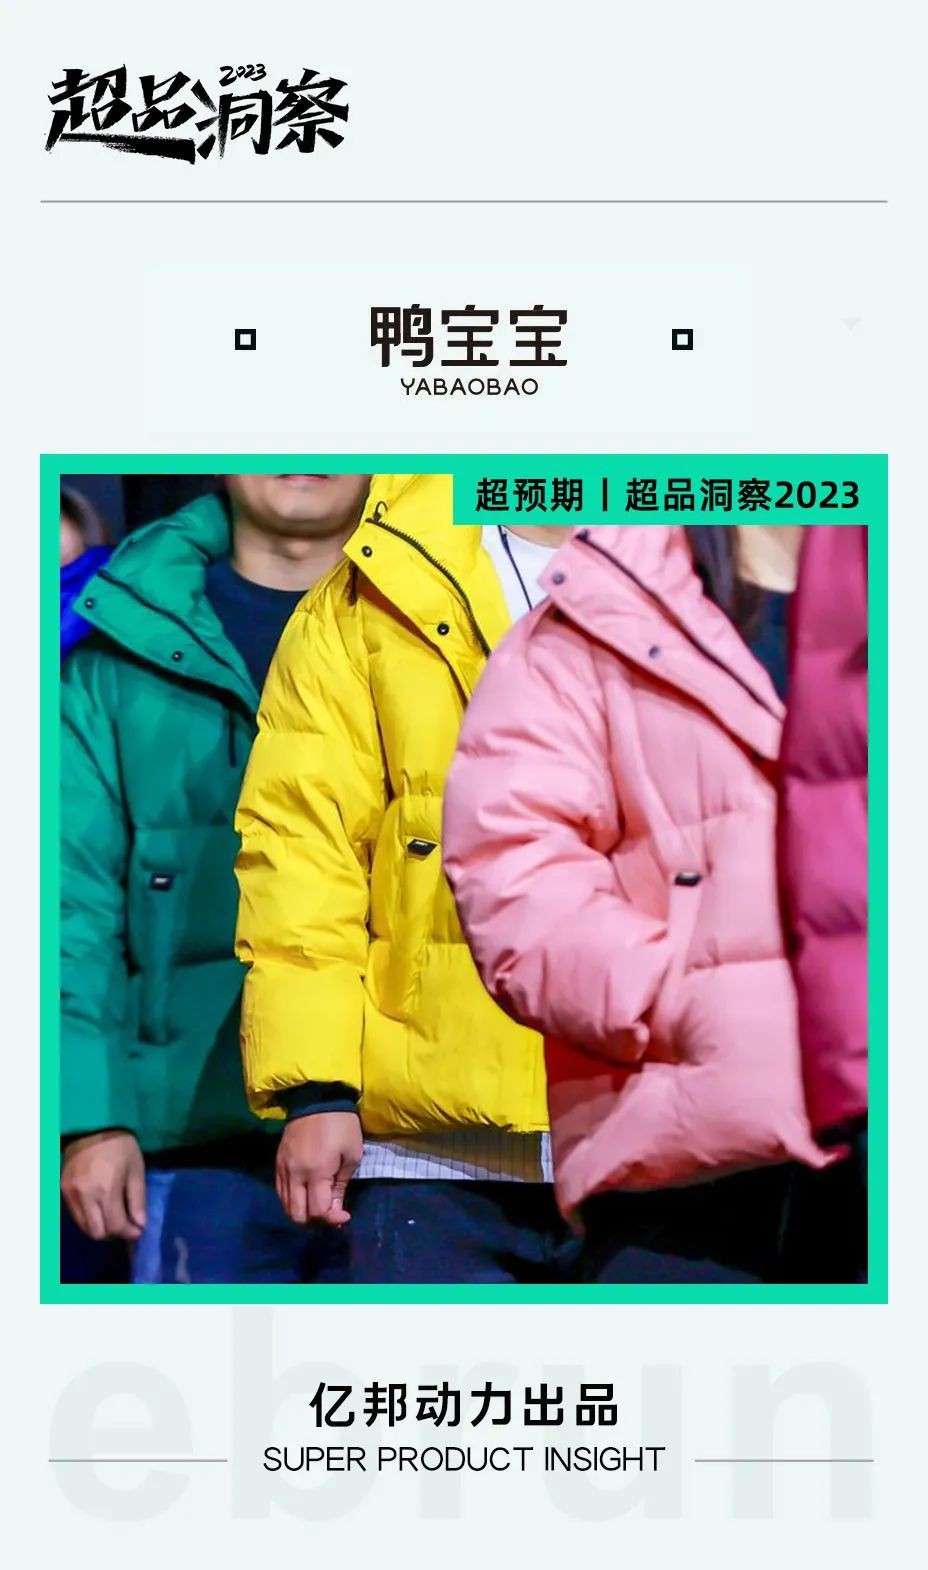 传统文化与现代时尚结合，鸭宝宝羽绒衣发布48种颜色“东方国色”系列丨亿邦动力超品洞察